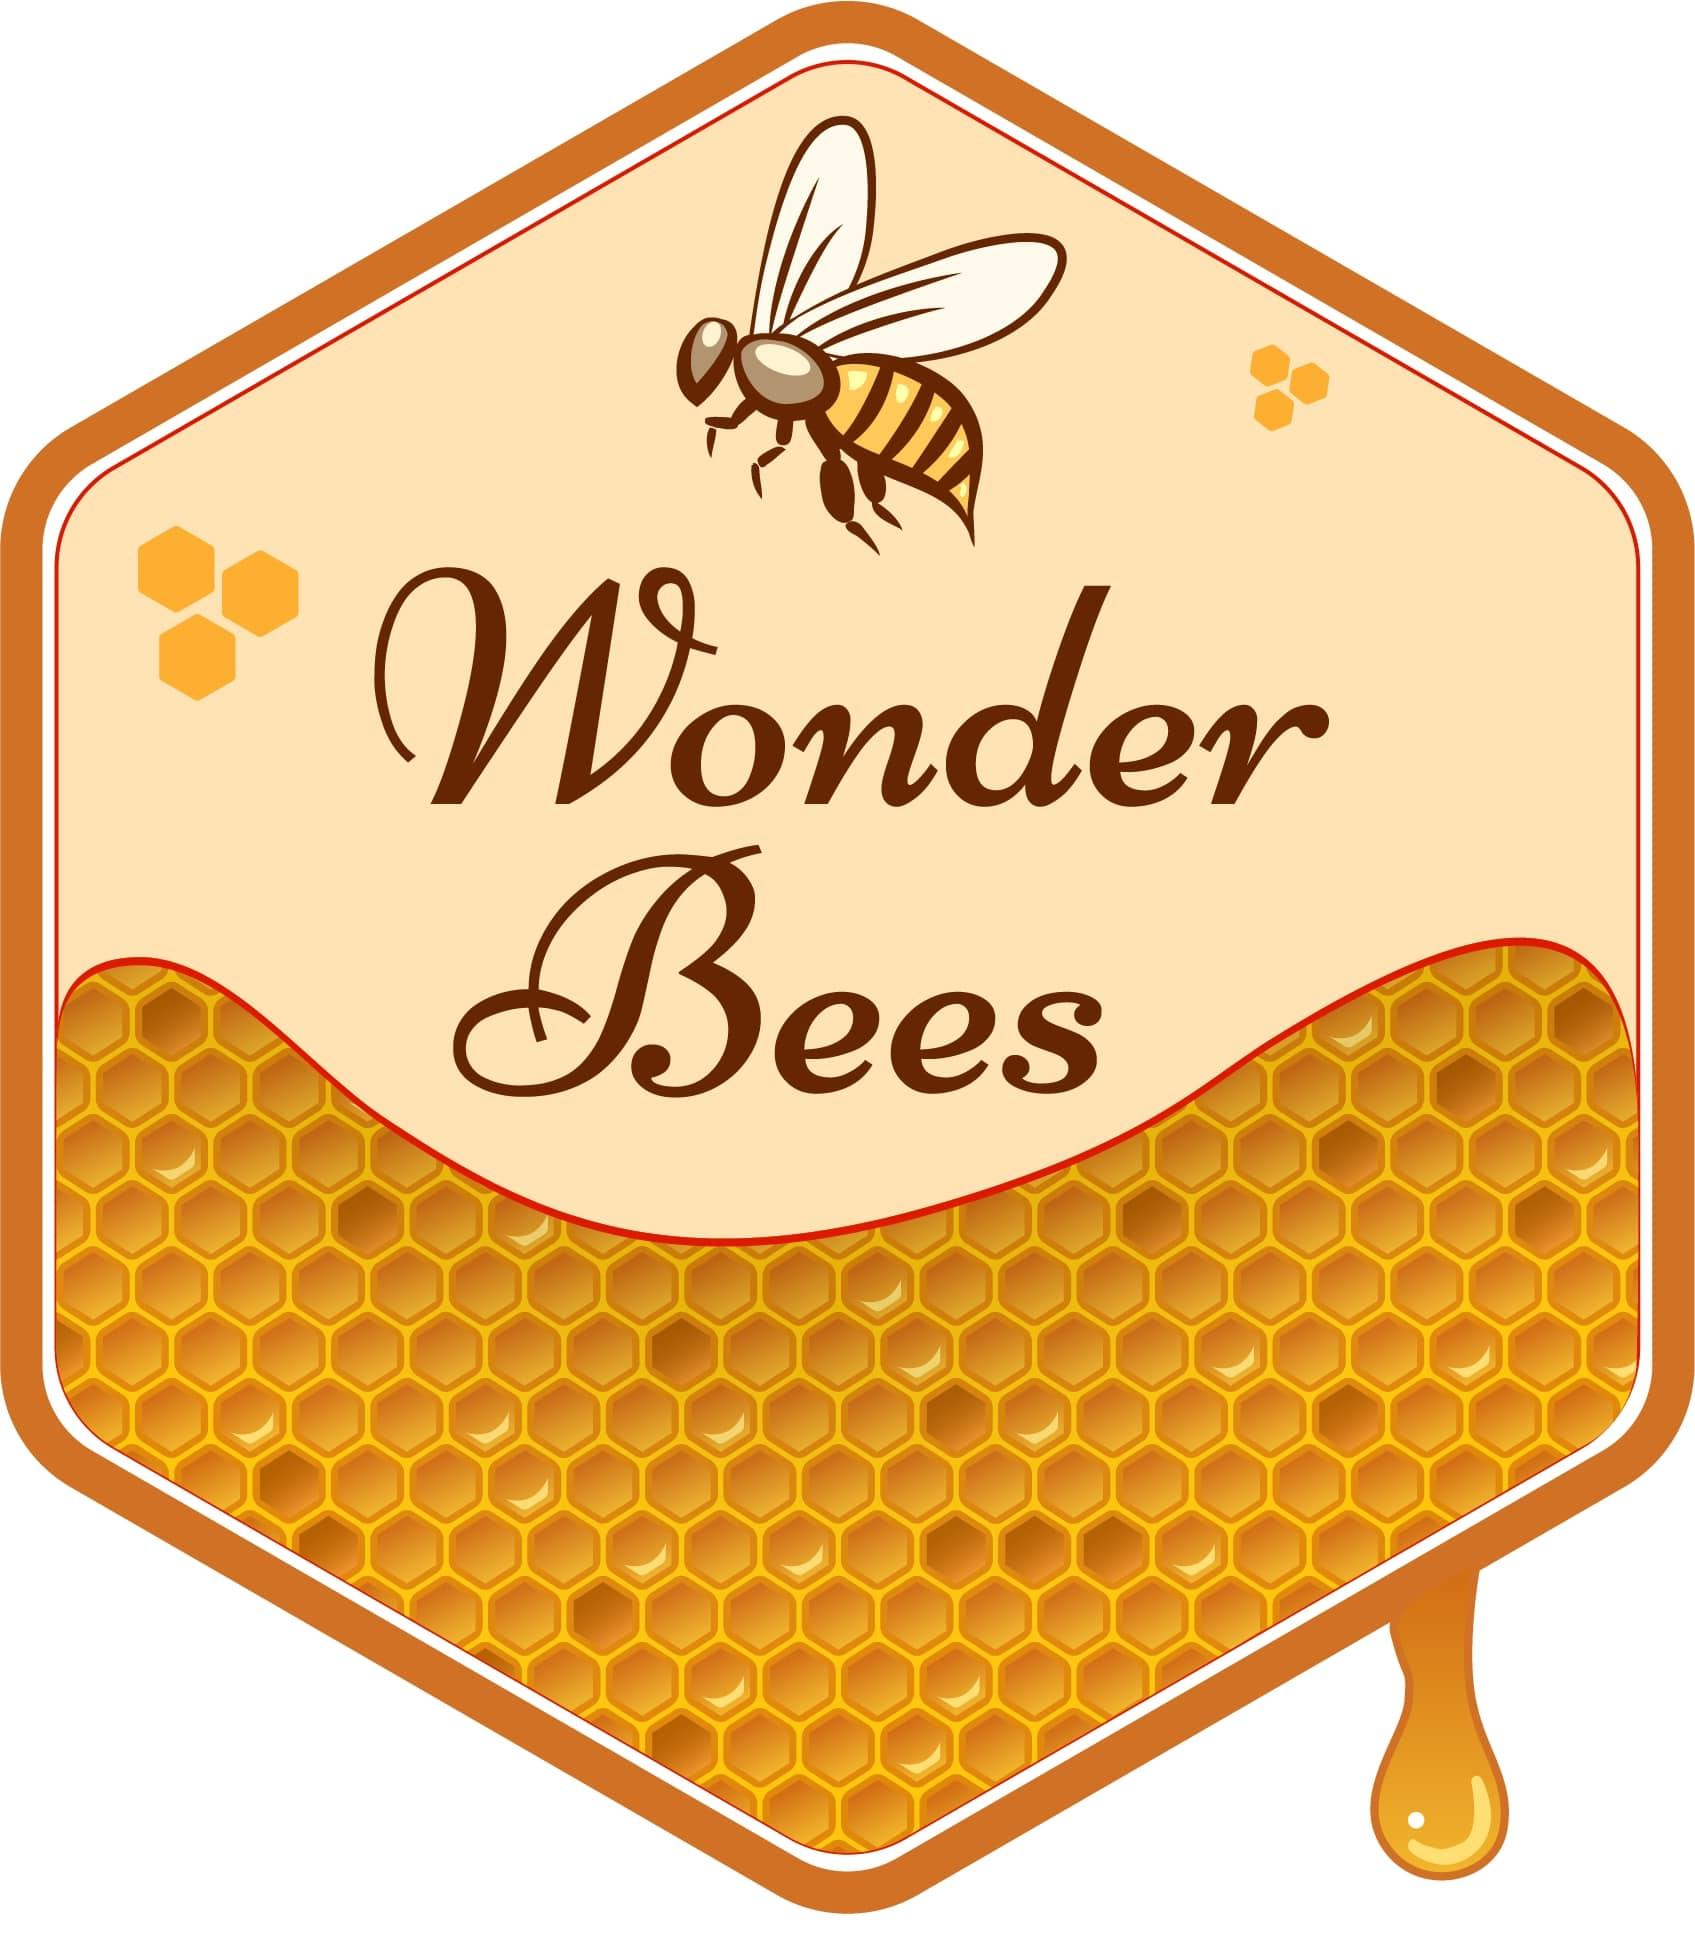 Wonder Bees Honey Traders